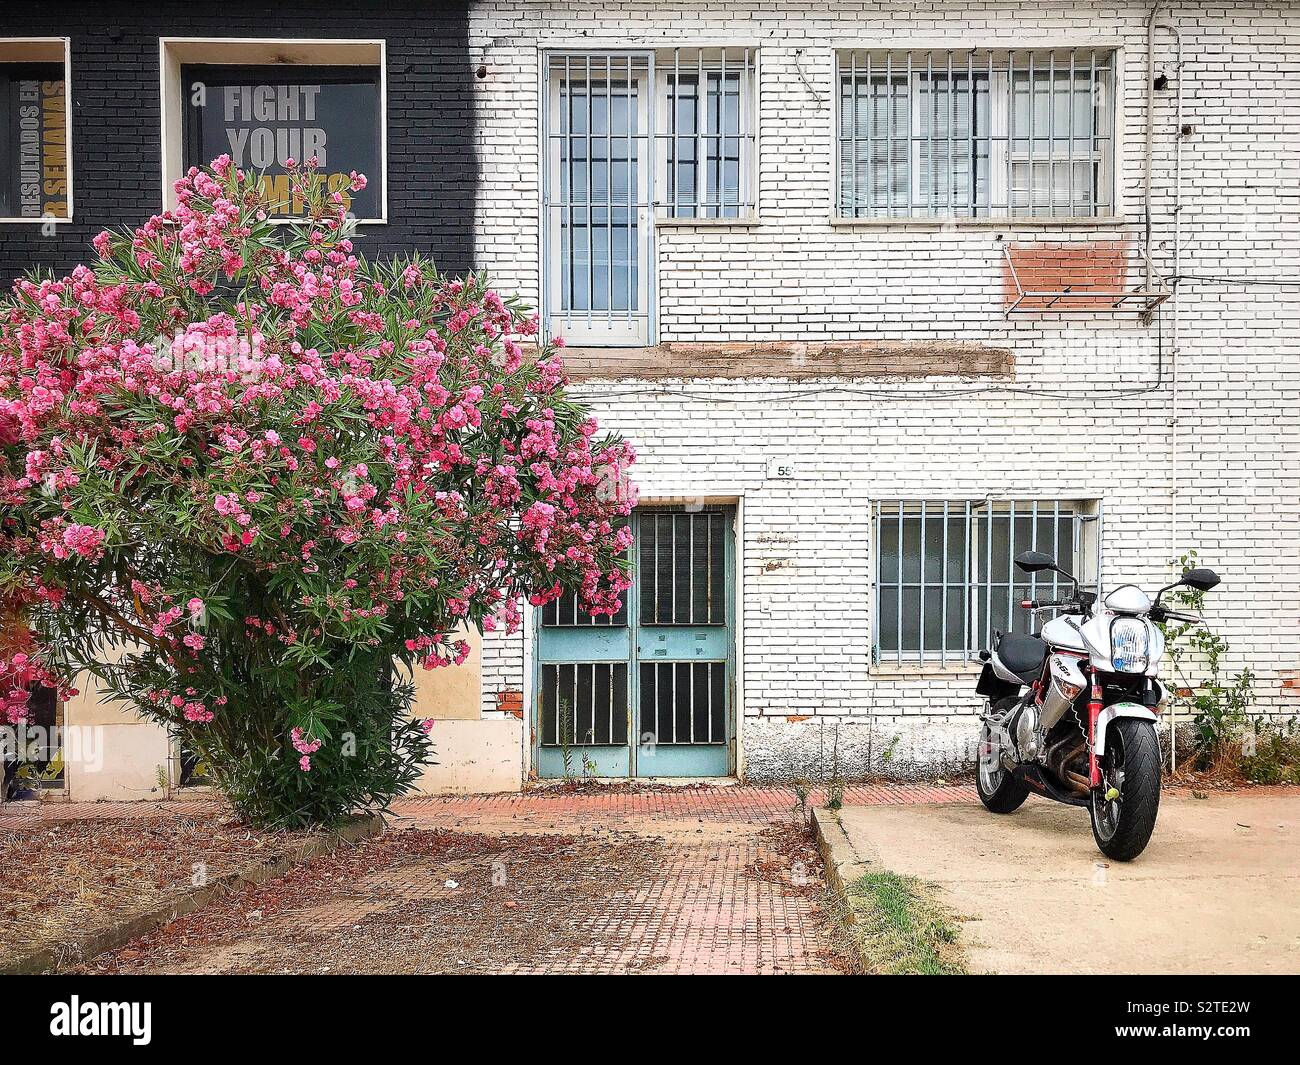 Un motociclo è parcheggiato di fronte un po' edificio fatiscente con dipinti di bianco cotto e porte e finestre fissato da barre metalliche, dipinto in azzurro. Un arbusto è in piena fioritura Foto Stock